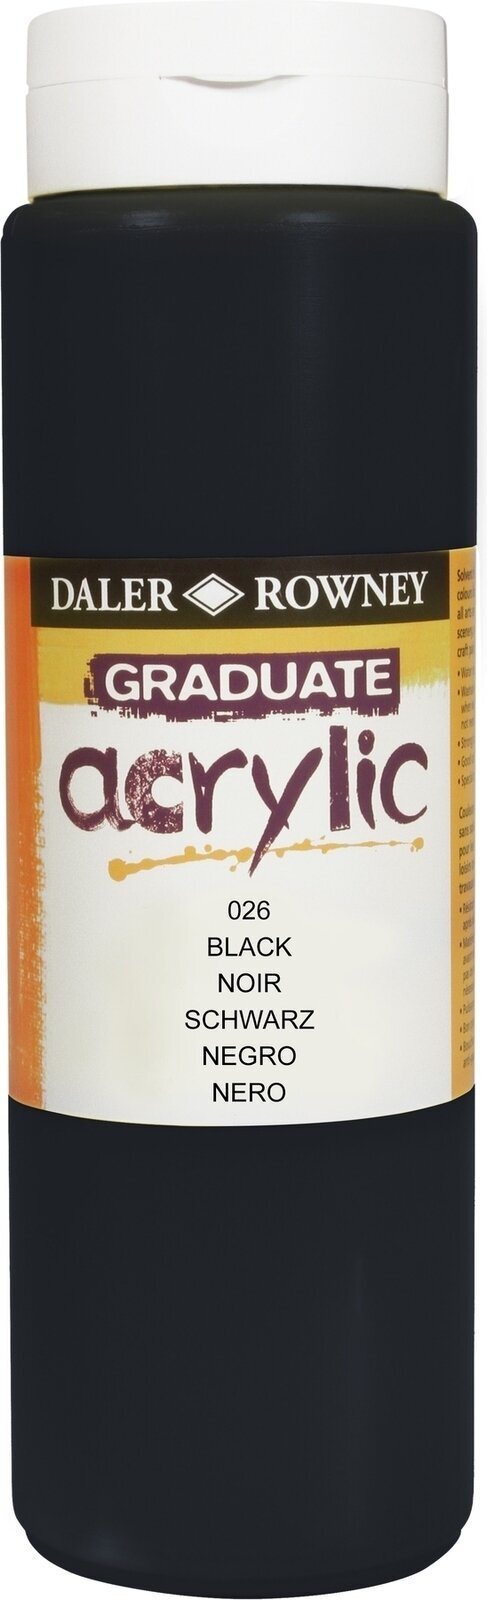 Akrilna boja Daler Rowney Graduate Akrilna boja Black 500 ml 1 kom